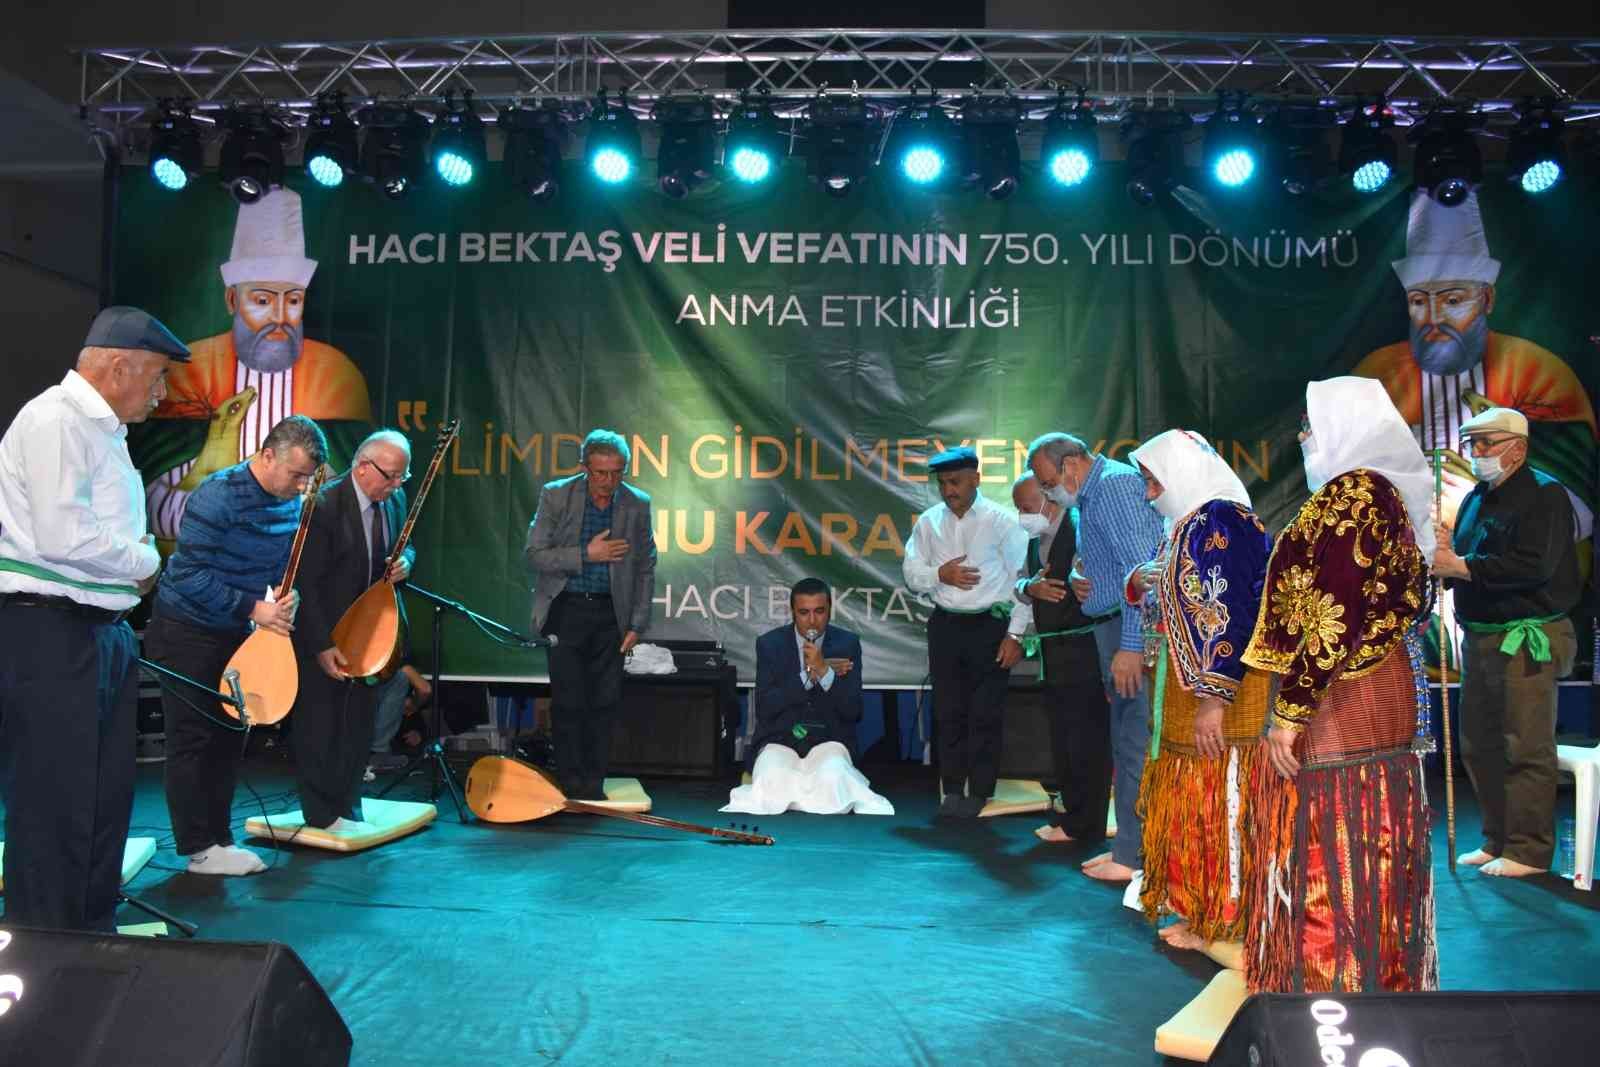 Amasya’da Hacı Bektaş-ı Veli’yi anma etkinlikleri yapıldı #amasya